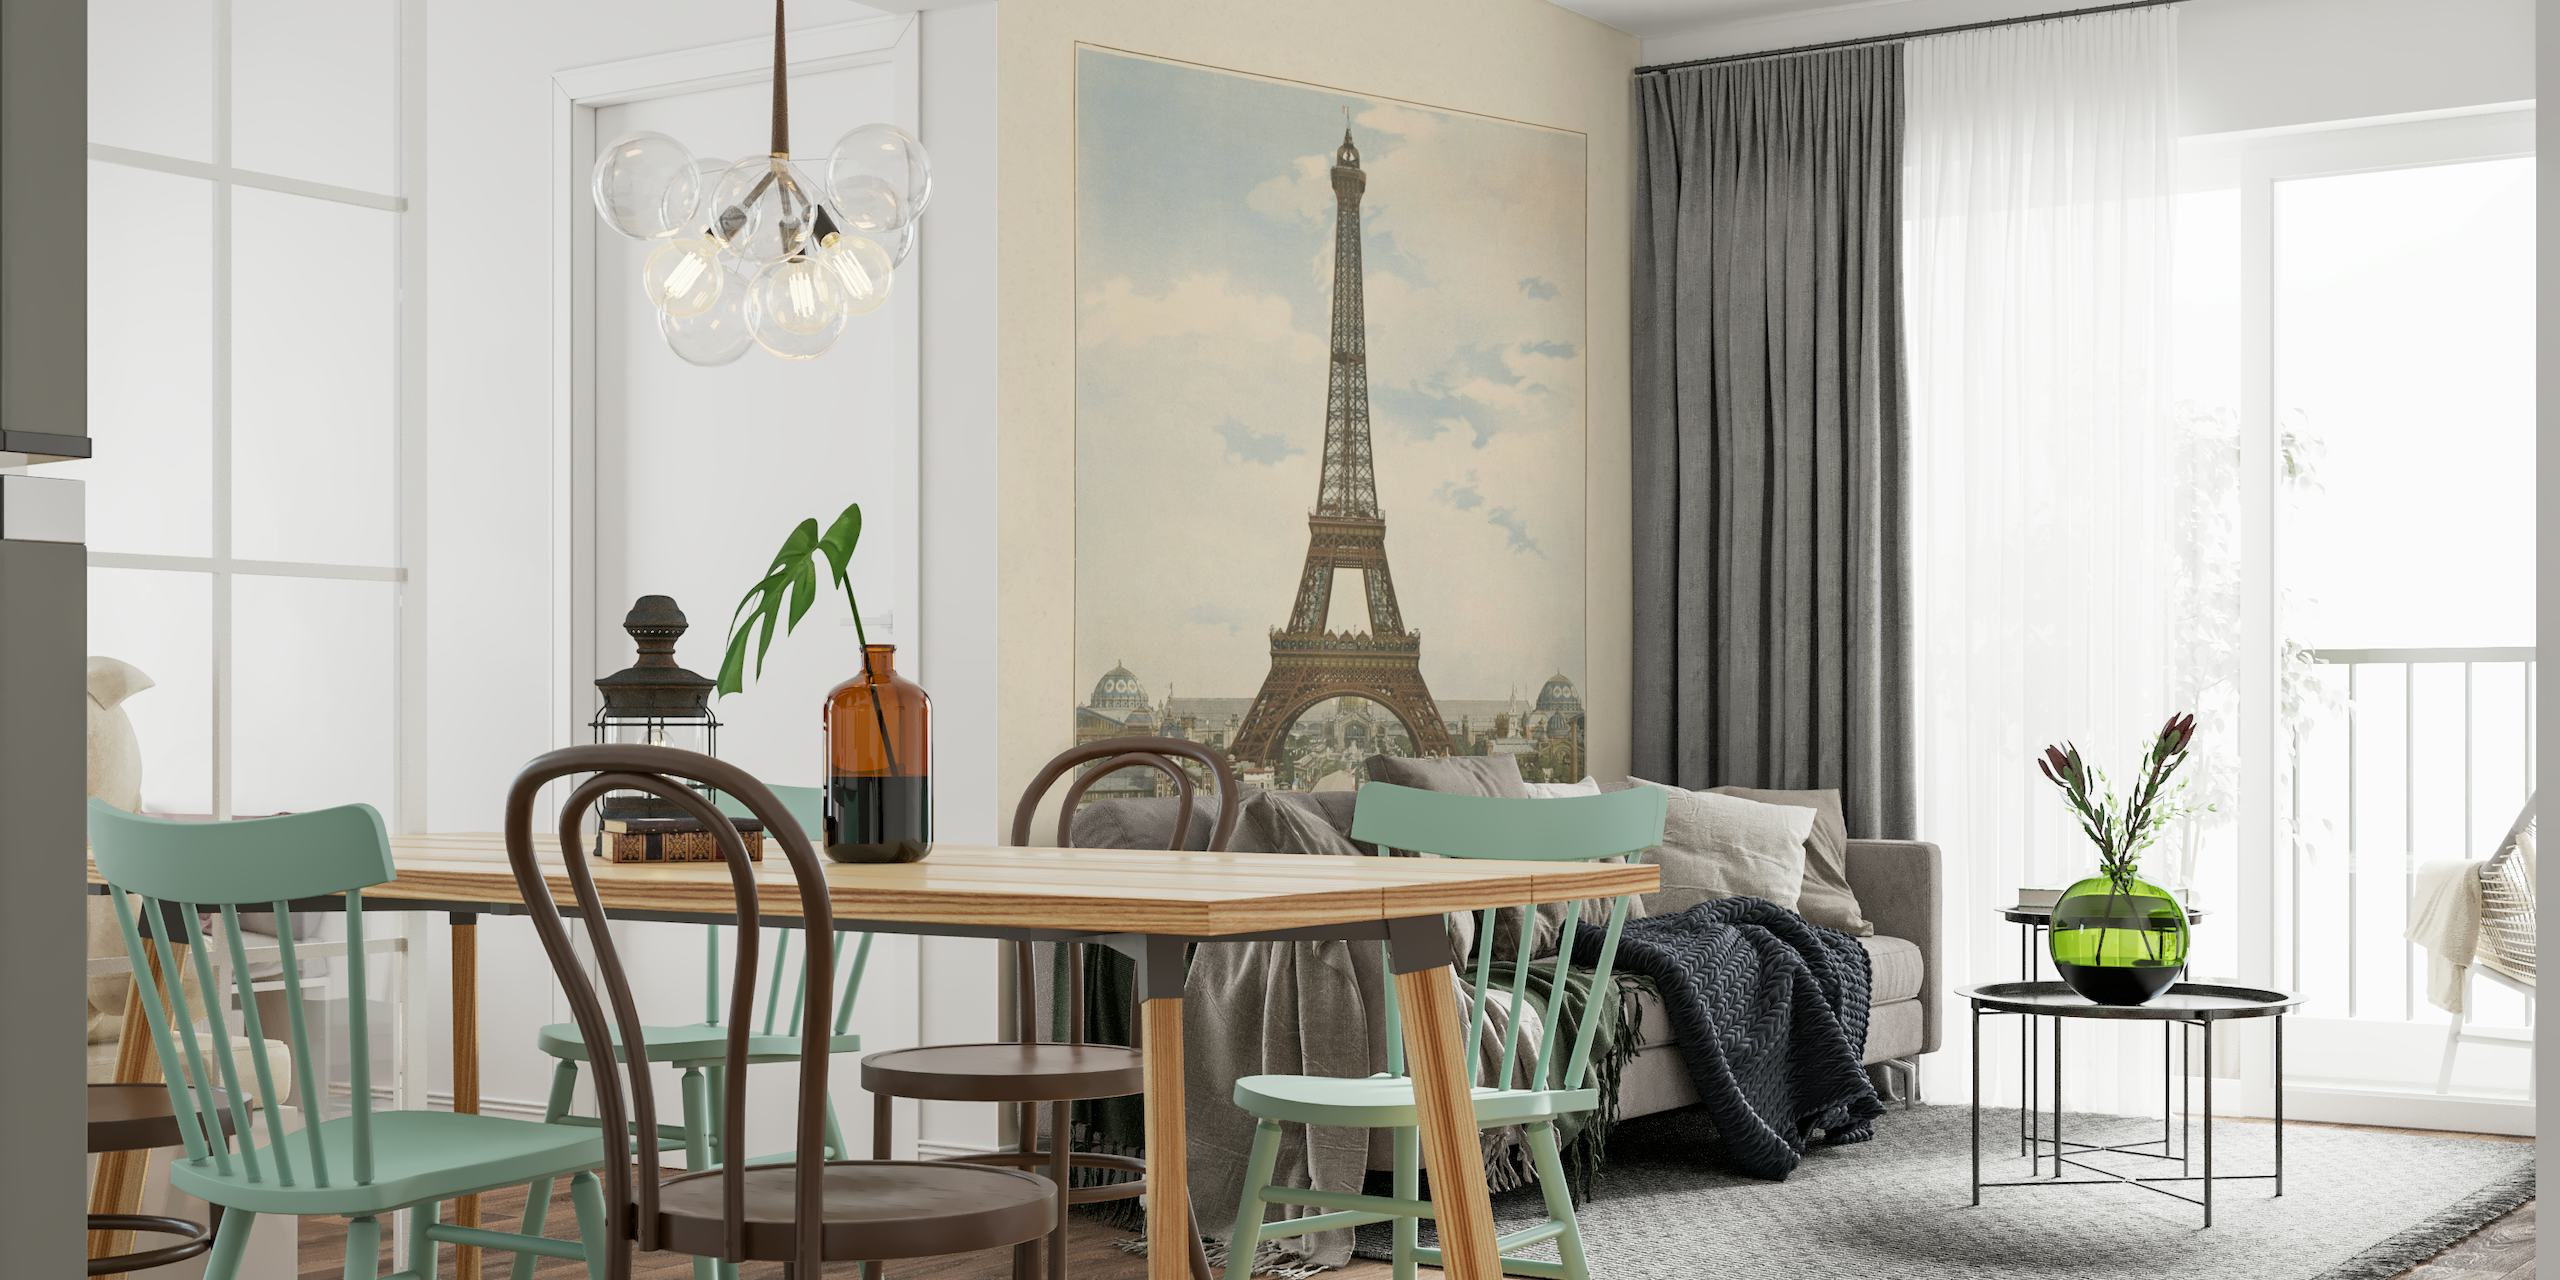 Fotomural de estilo vintage de la Torre Eiffel de París con la arquitectura circundante bajo un cielo tranquilo.